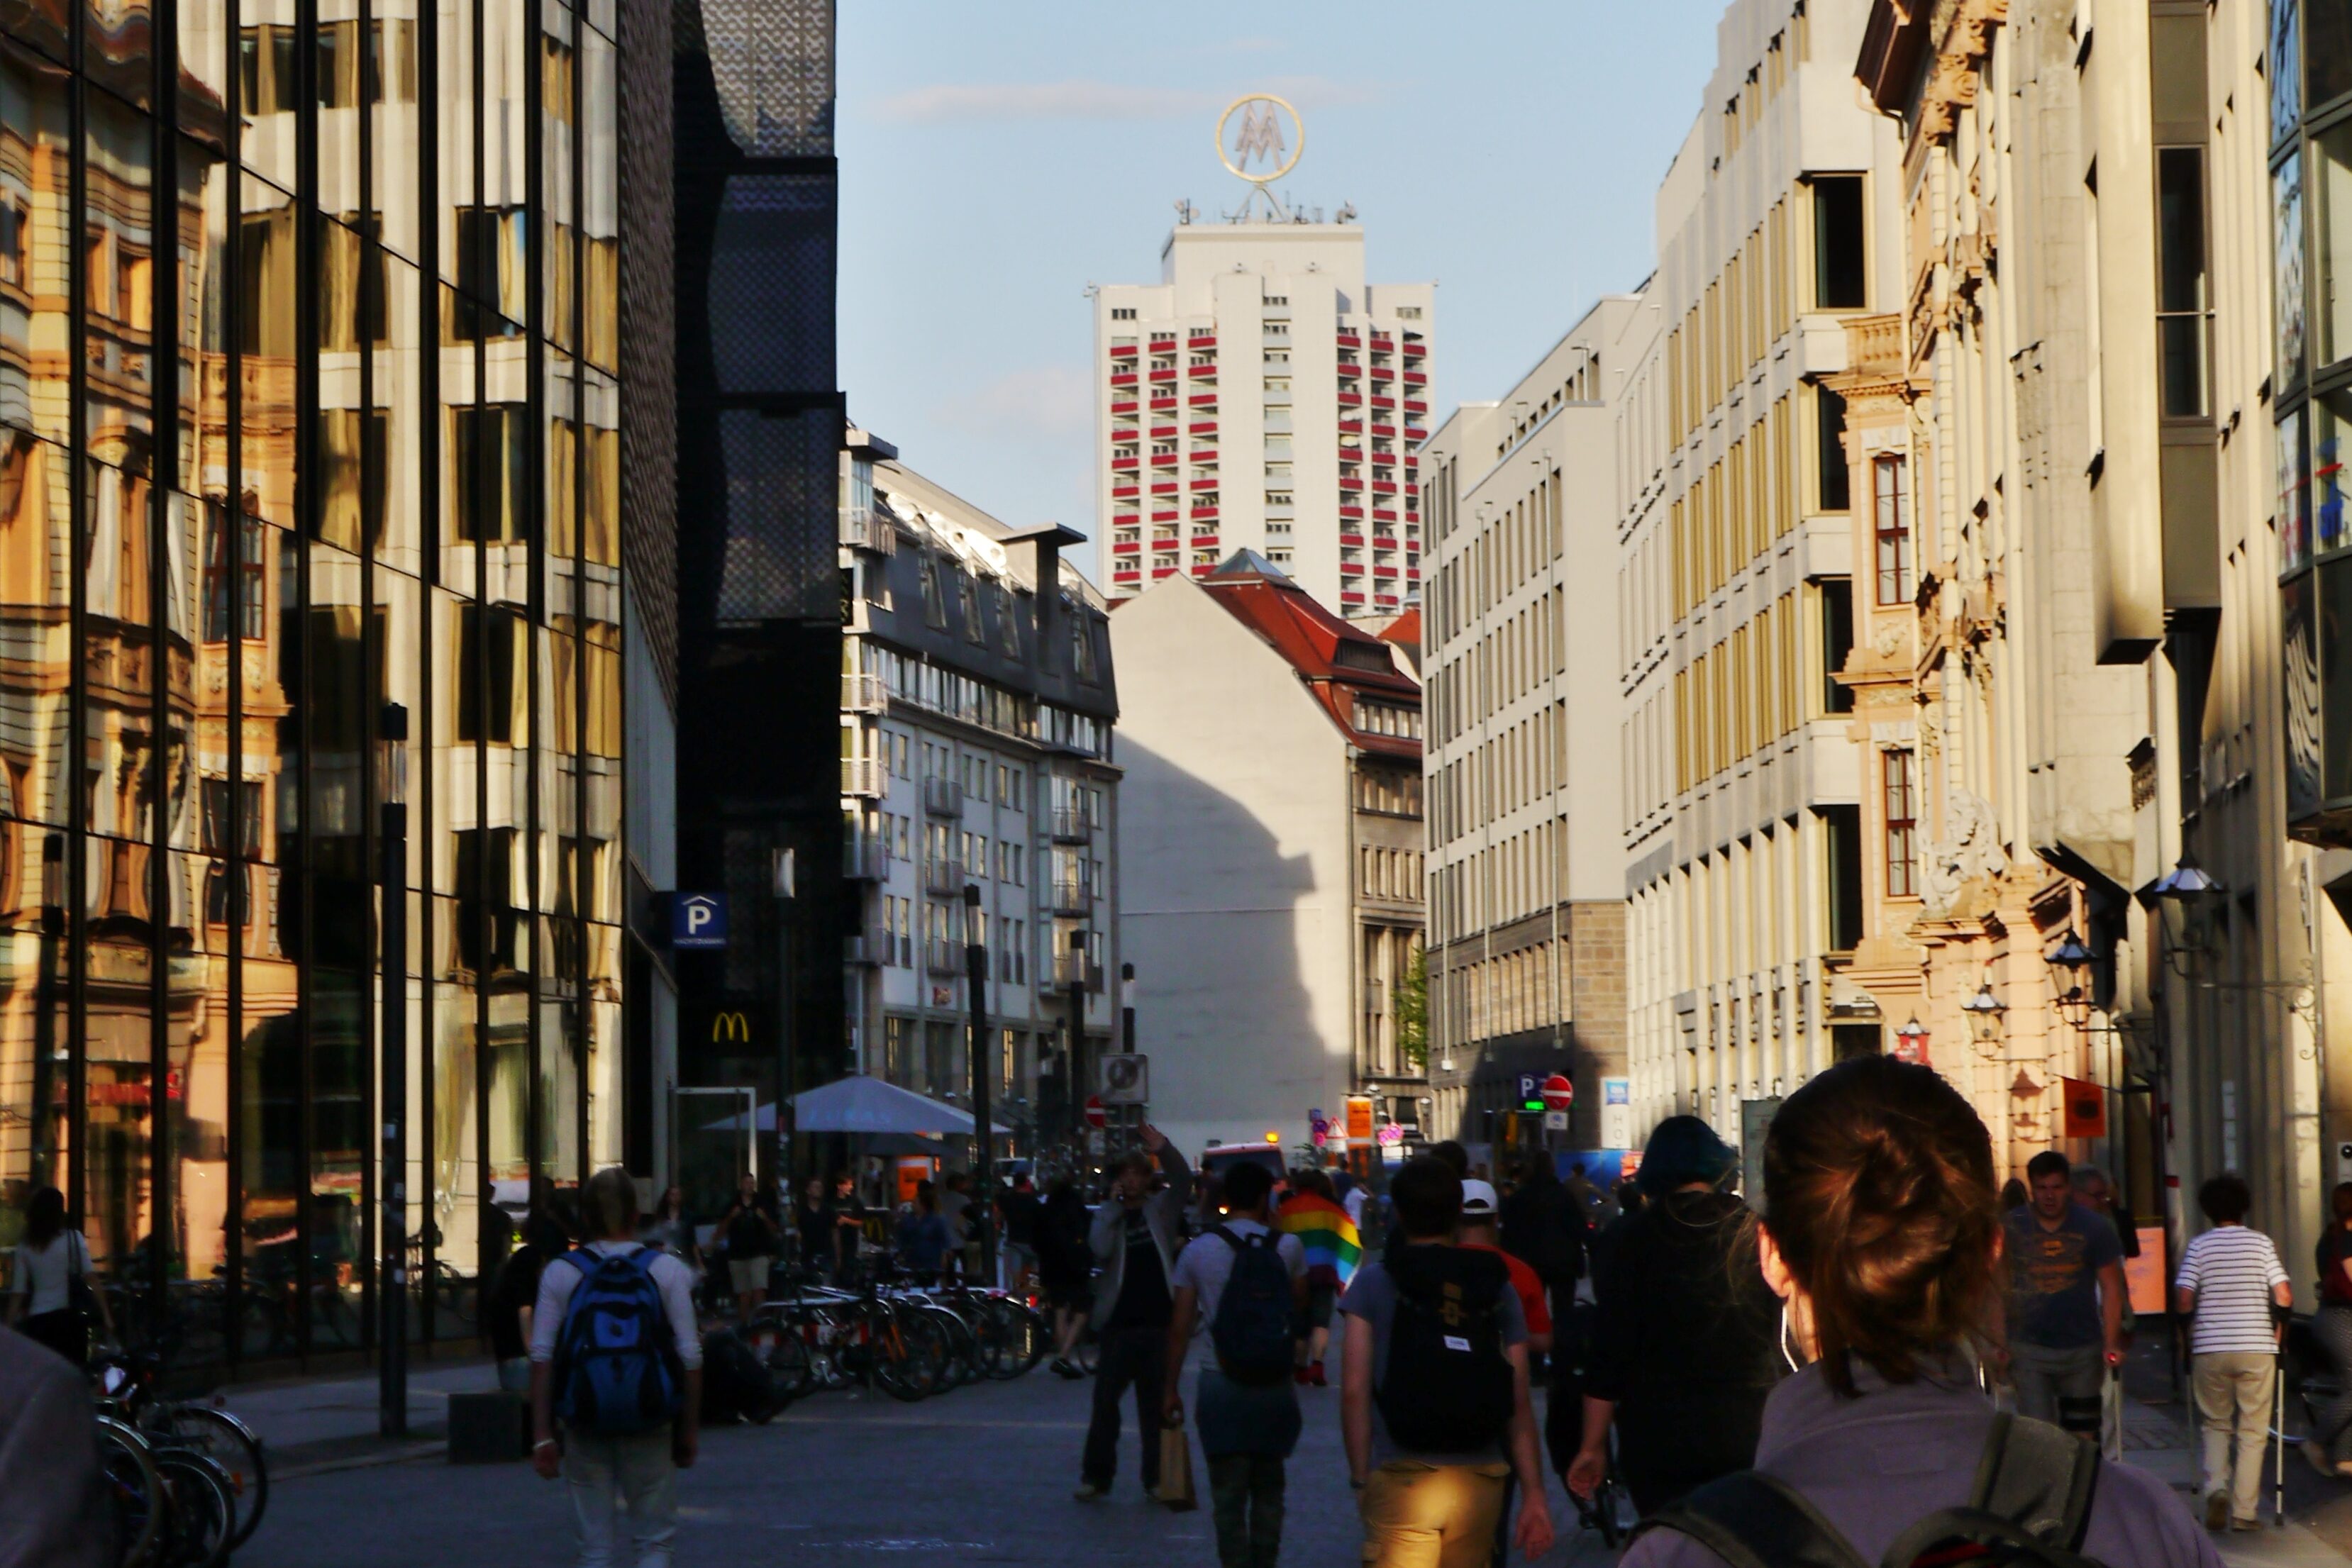   Ideen von oben für unten | Leipzig will Fördersumme für Innenstadt von fast fünf Millionen Euro einholen  